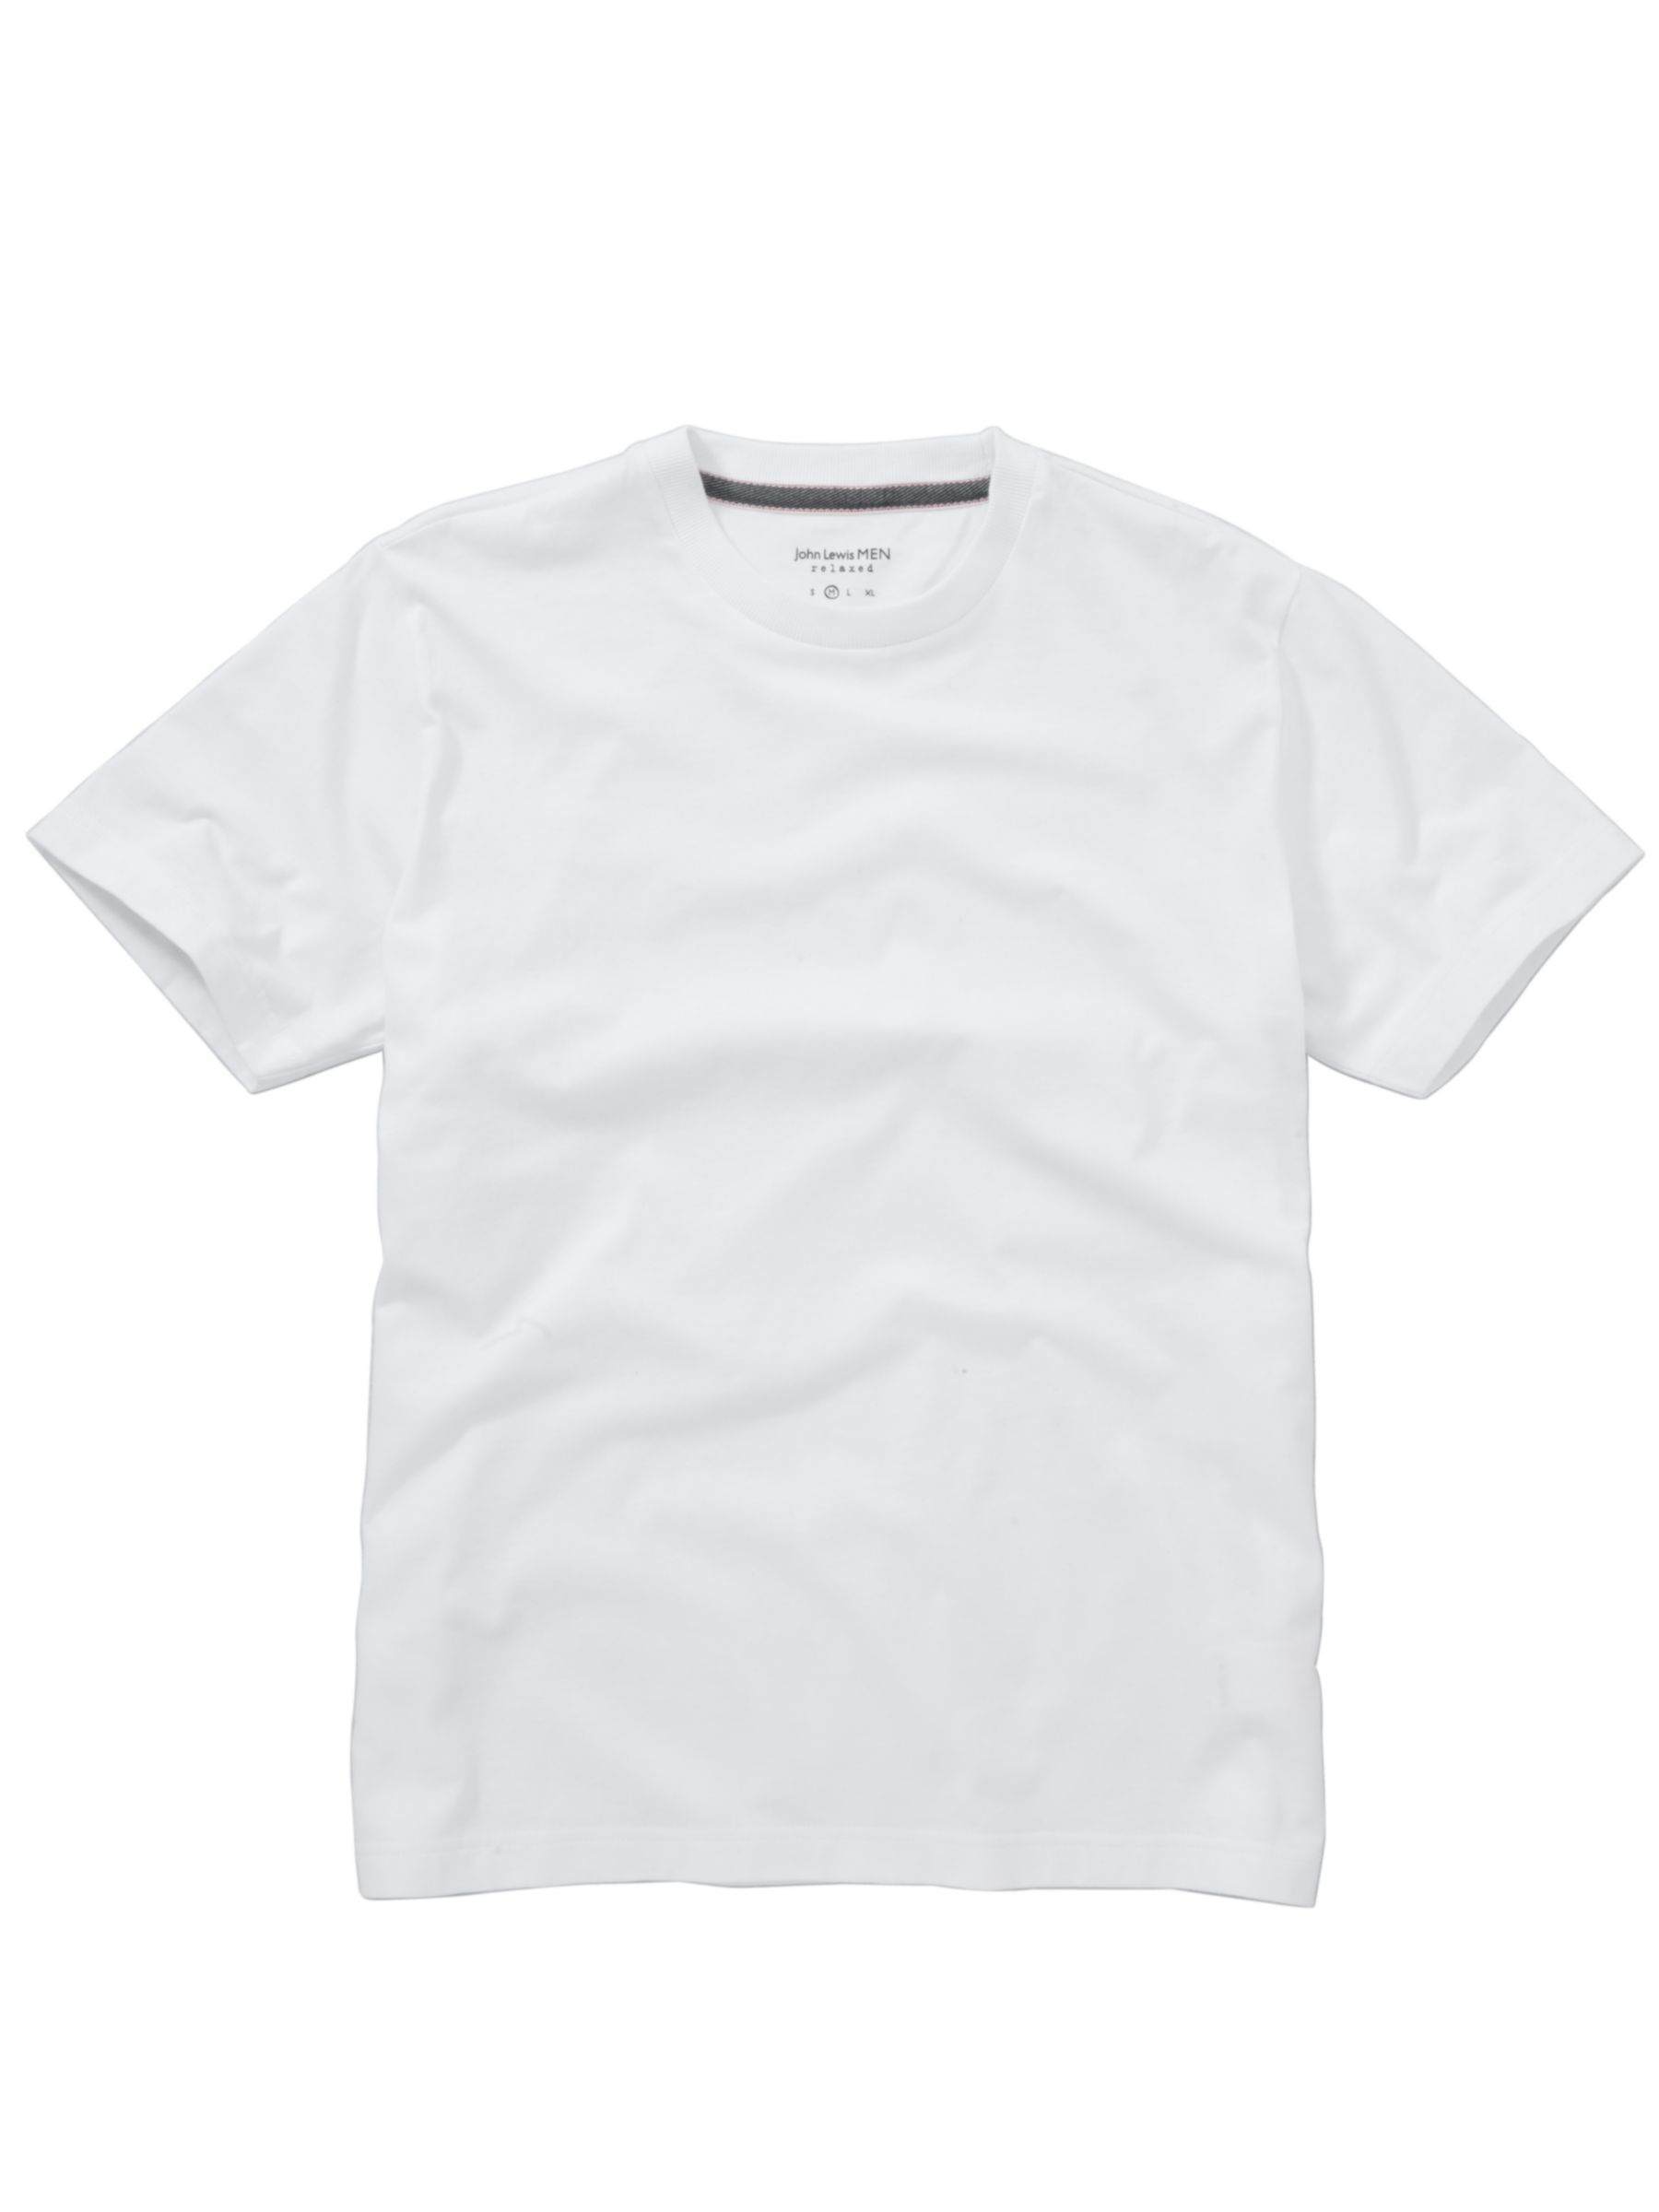 Men Cotton Crew Neck T-Shirt, White